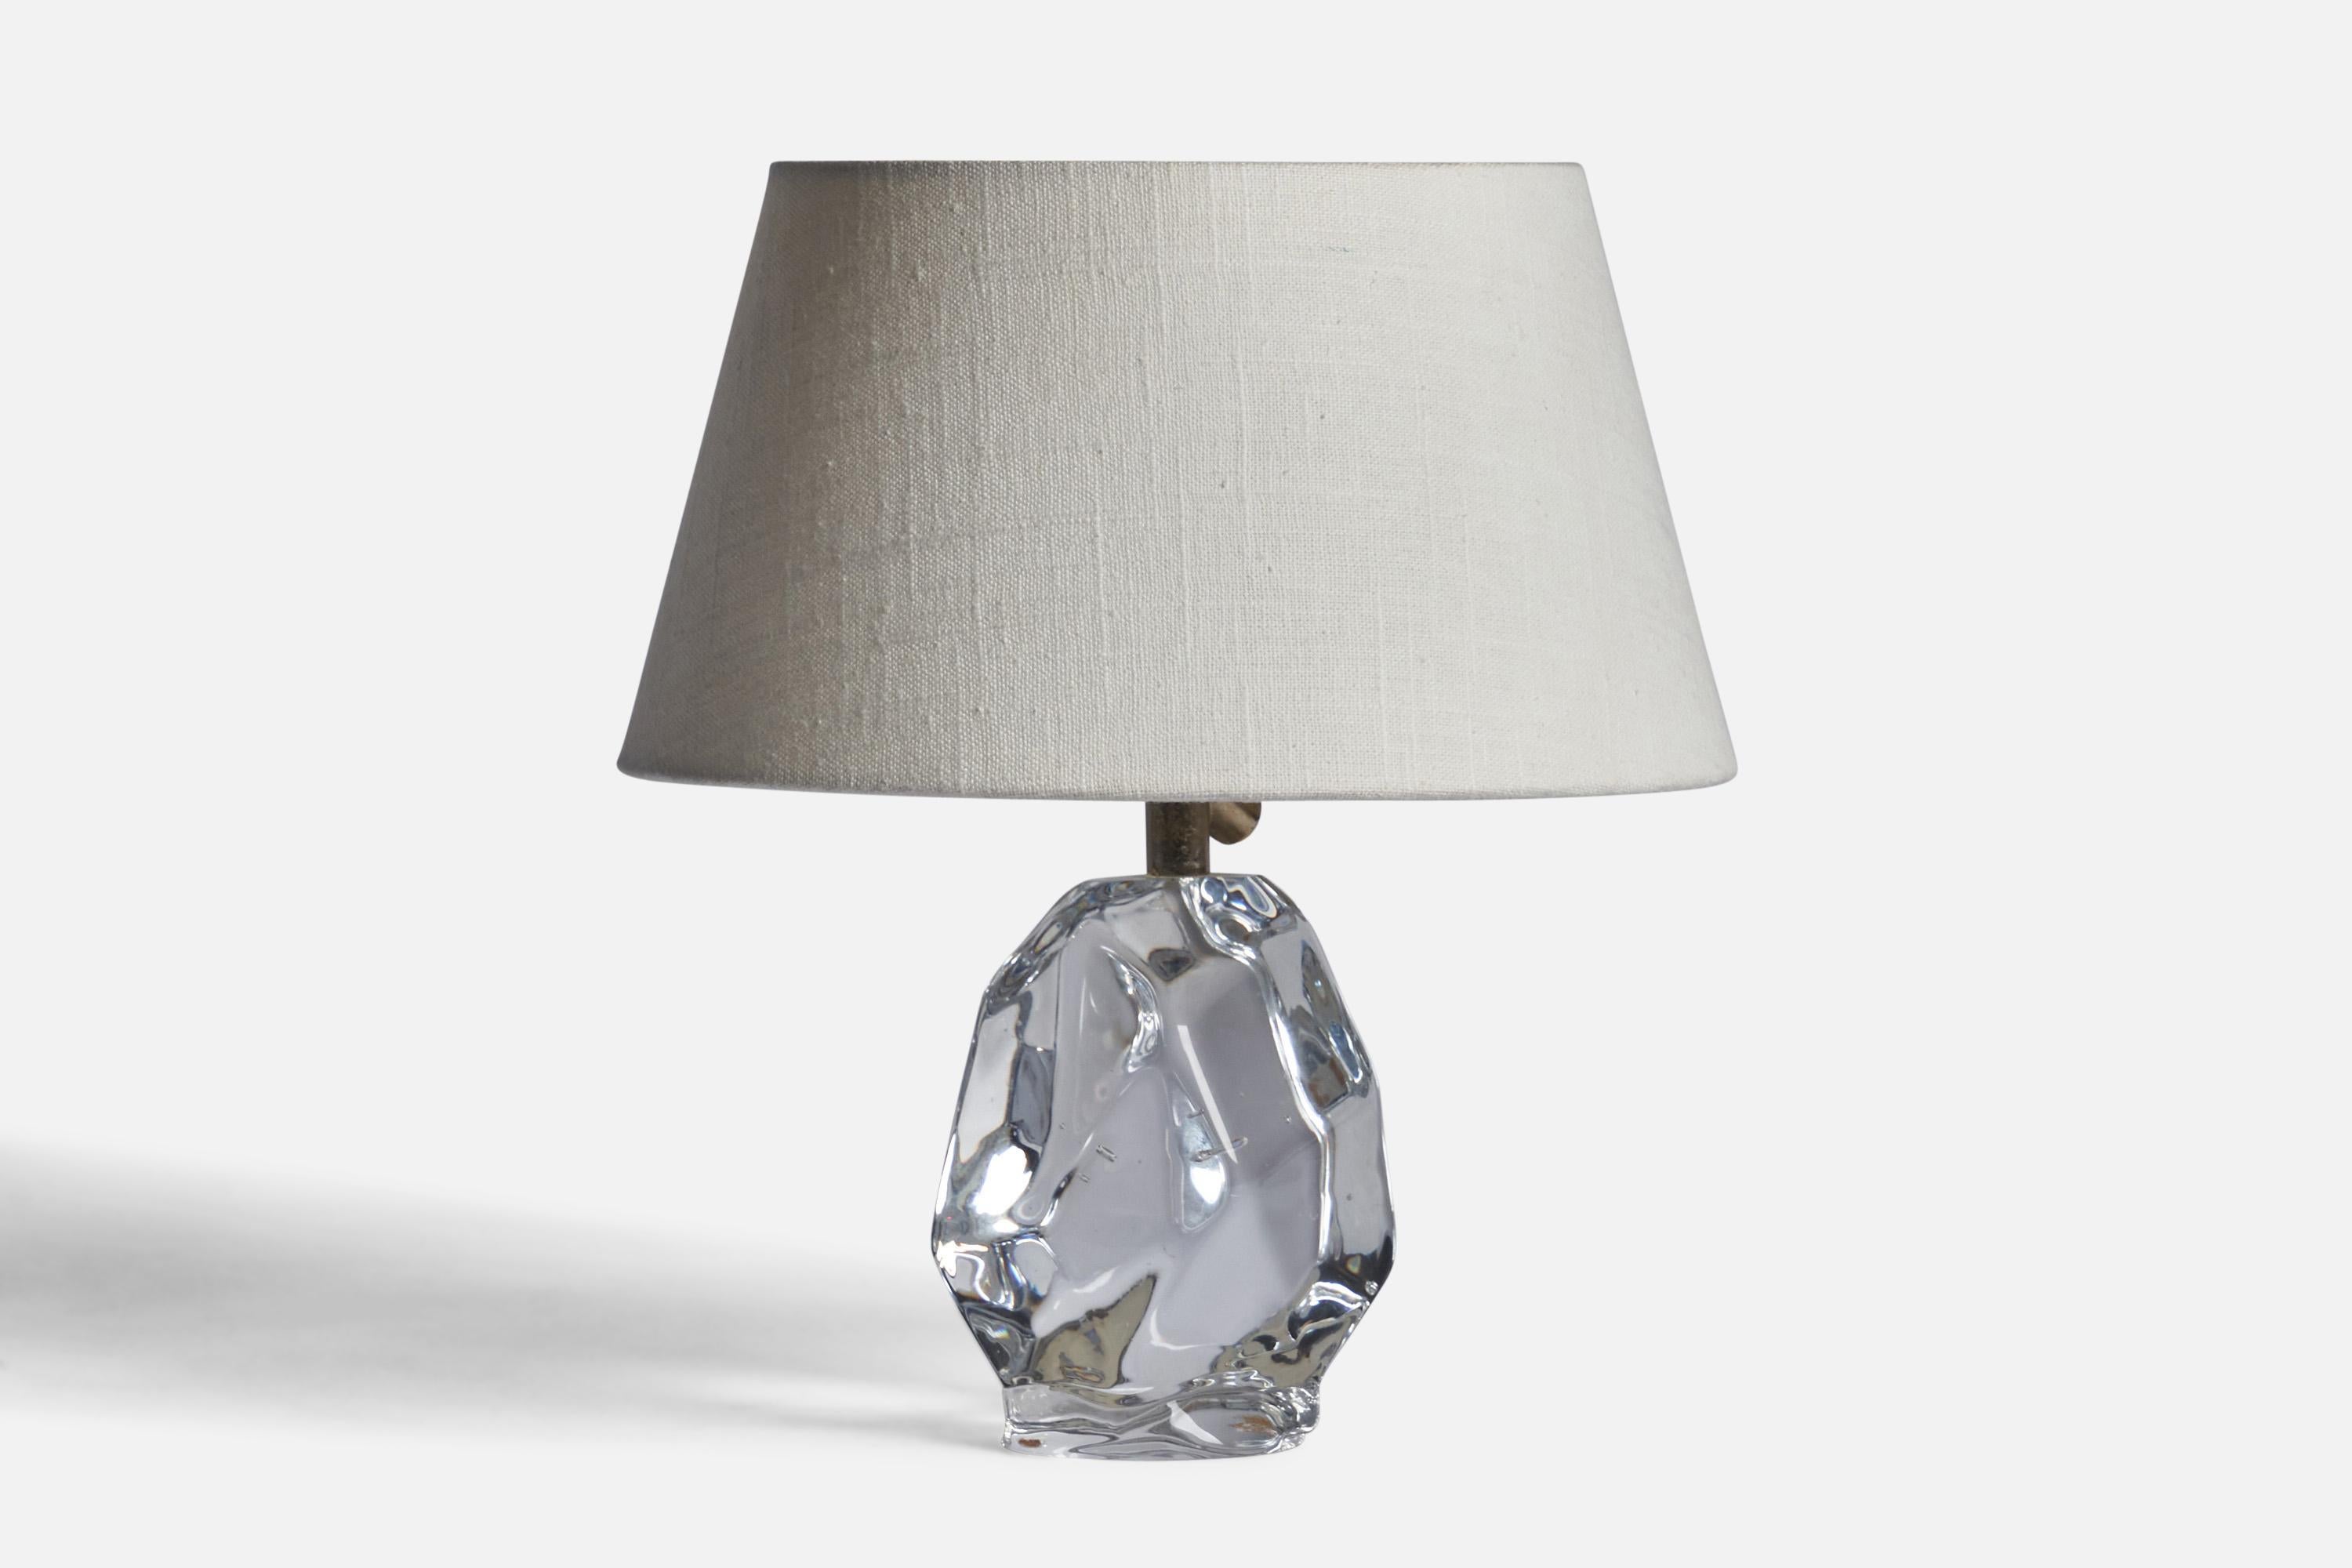 Lampe de table en verre et en laiton conçue et produite par Reijmyre Glasbruk, Suède, années 1950.

Dimensions de la lampe (pouces) : 8.5